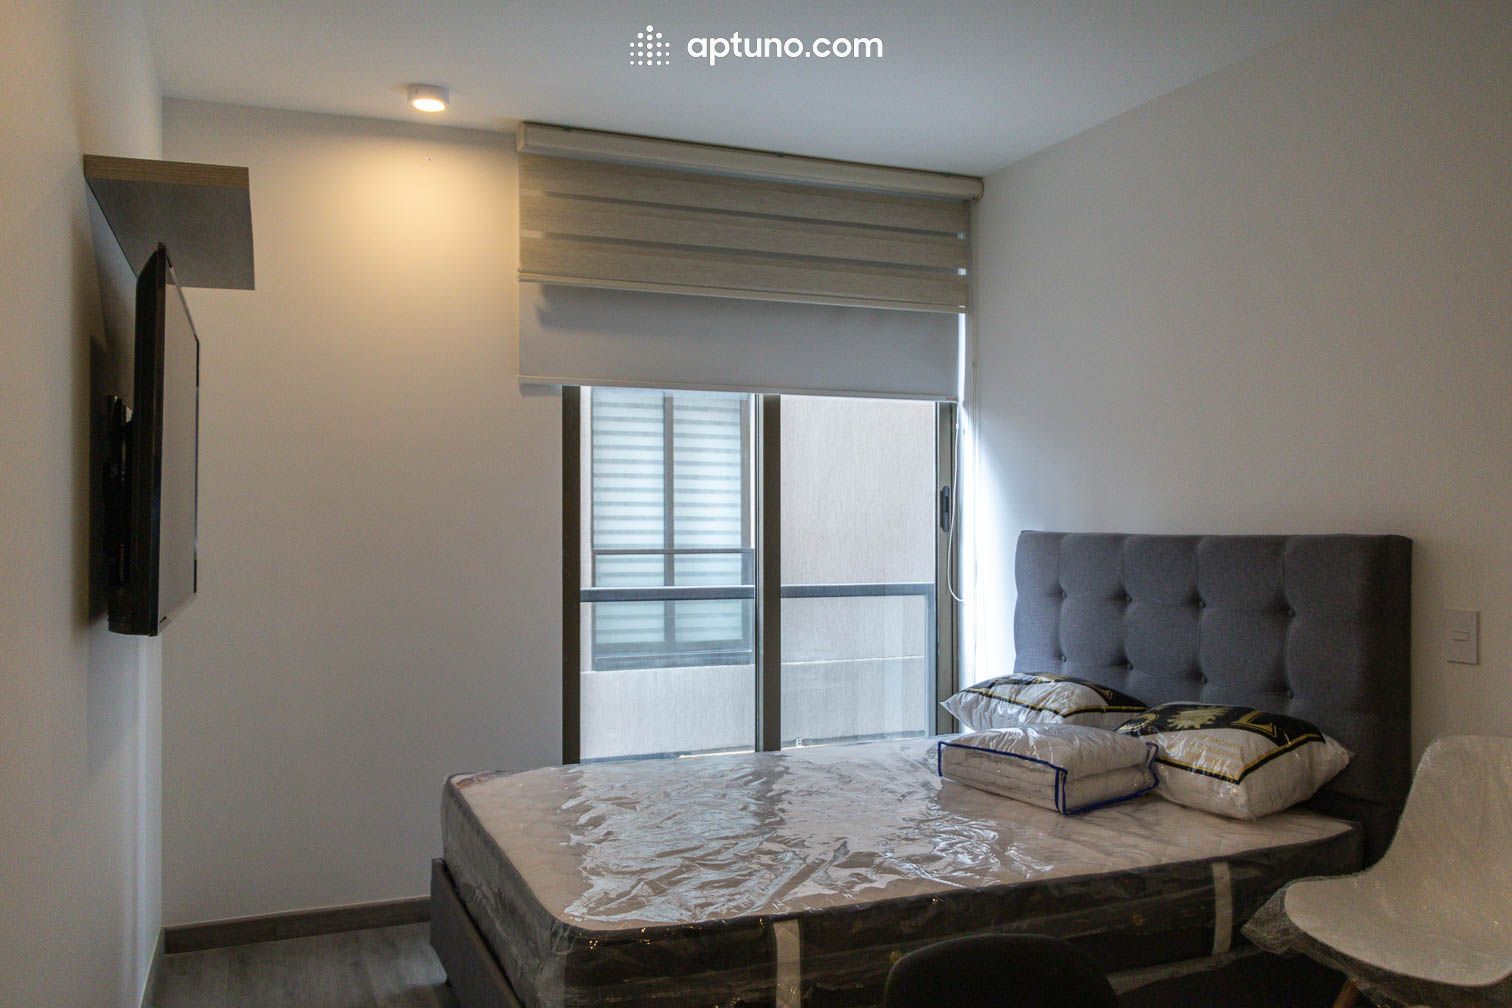 Apartamento en arriendo Chapinero Central 25 m² - $ 1.600.000,00